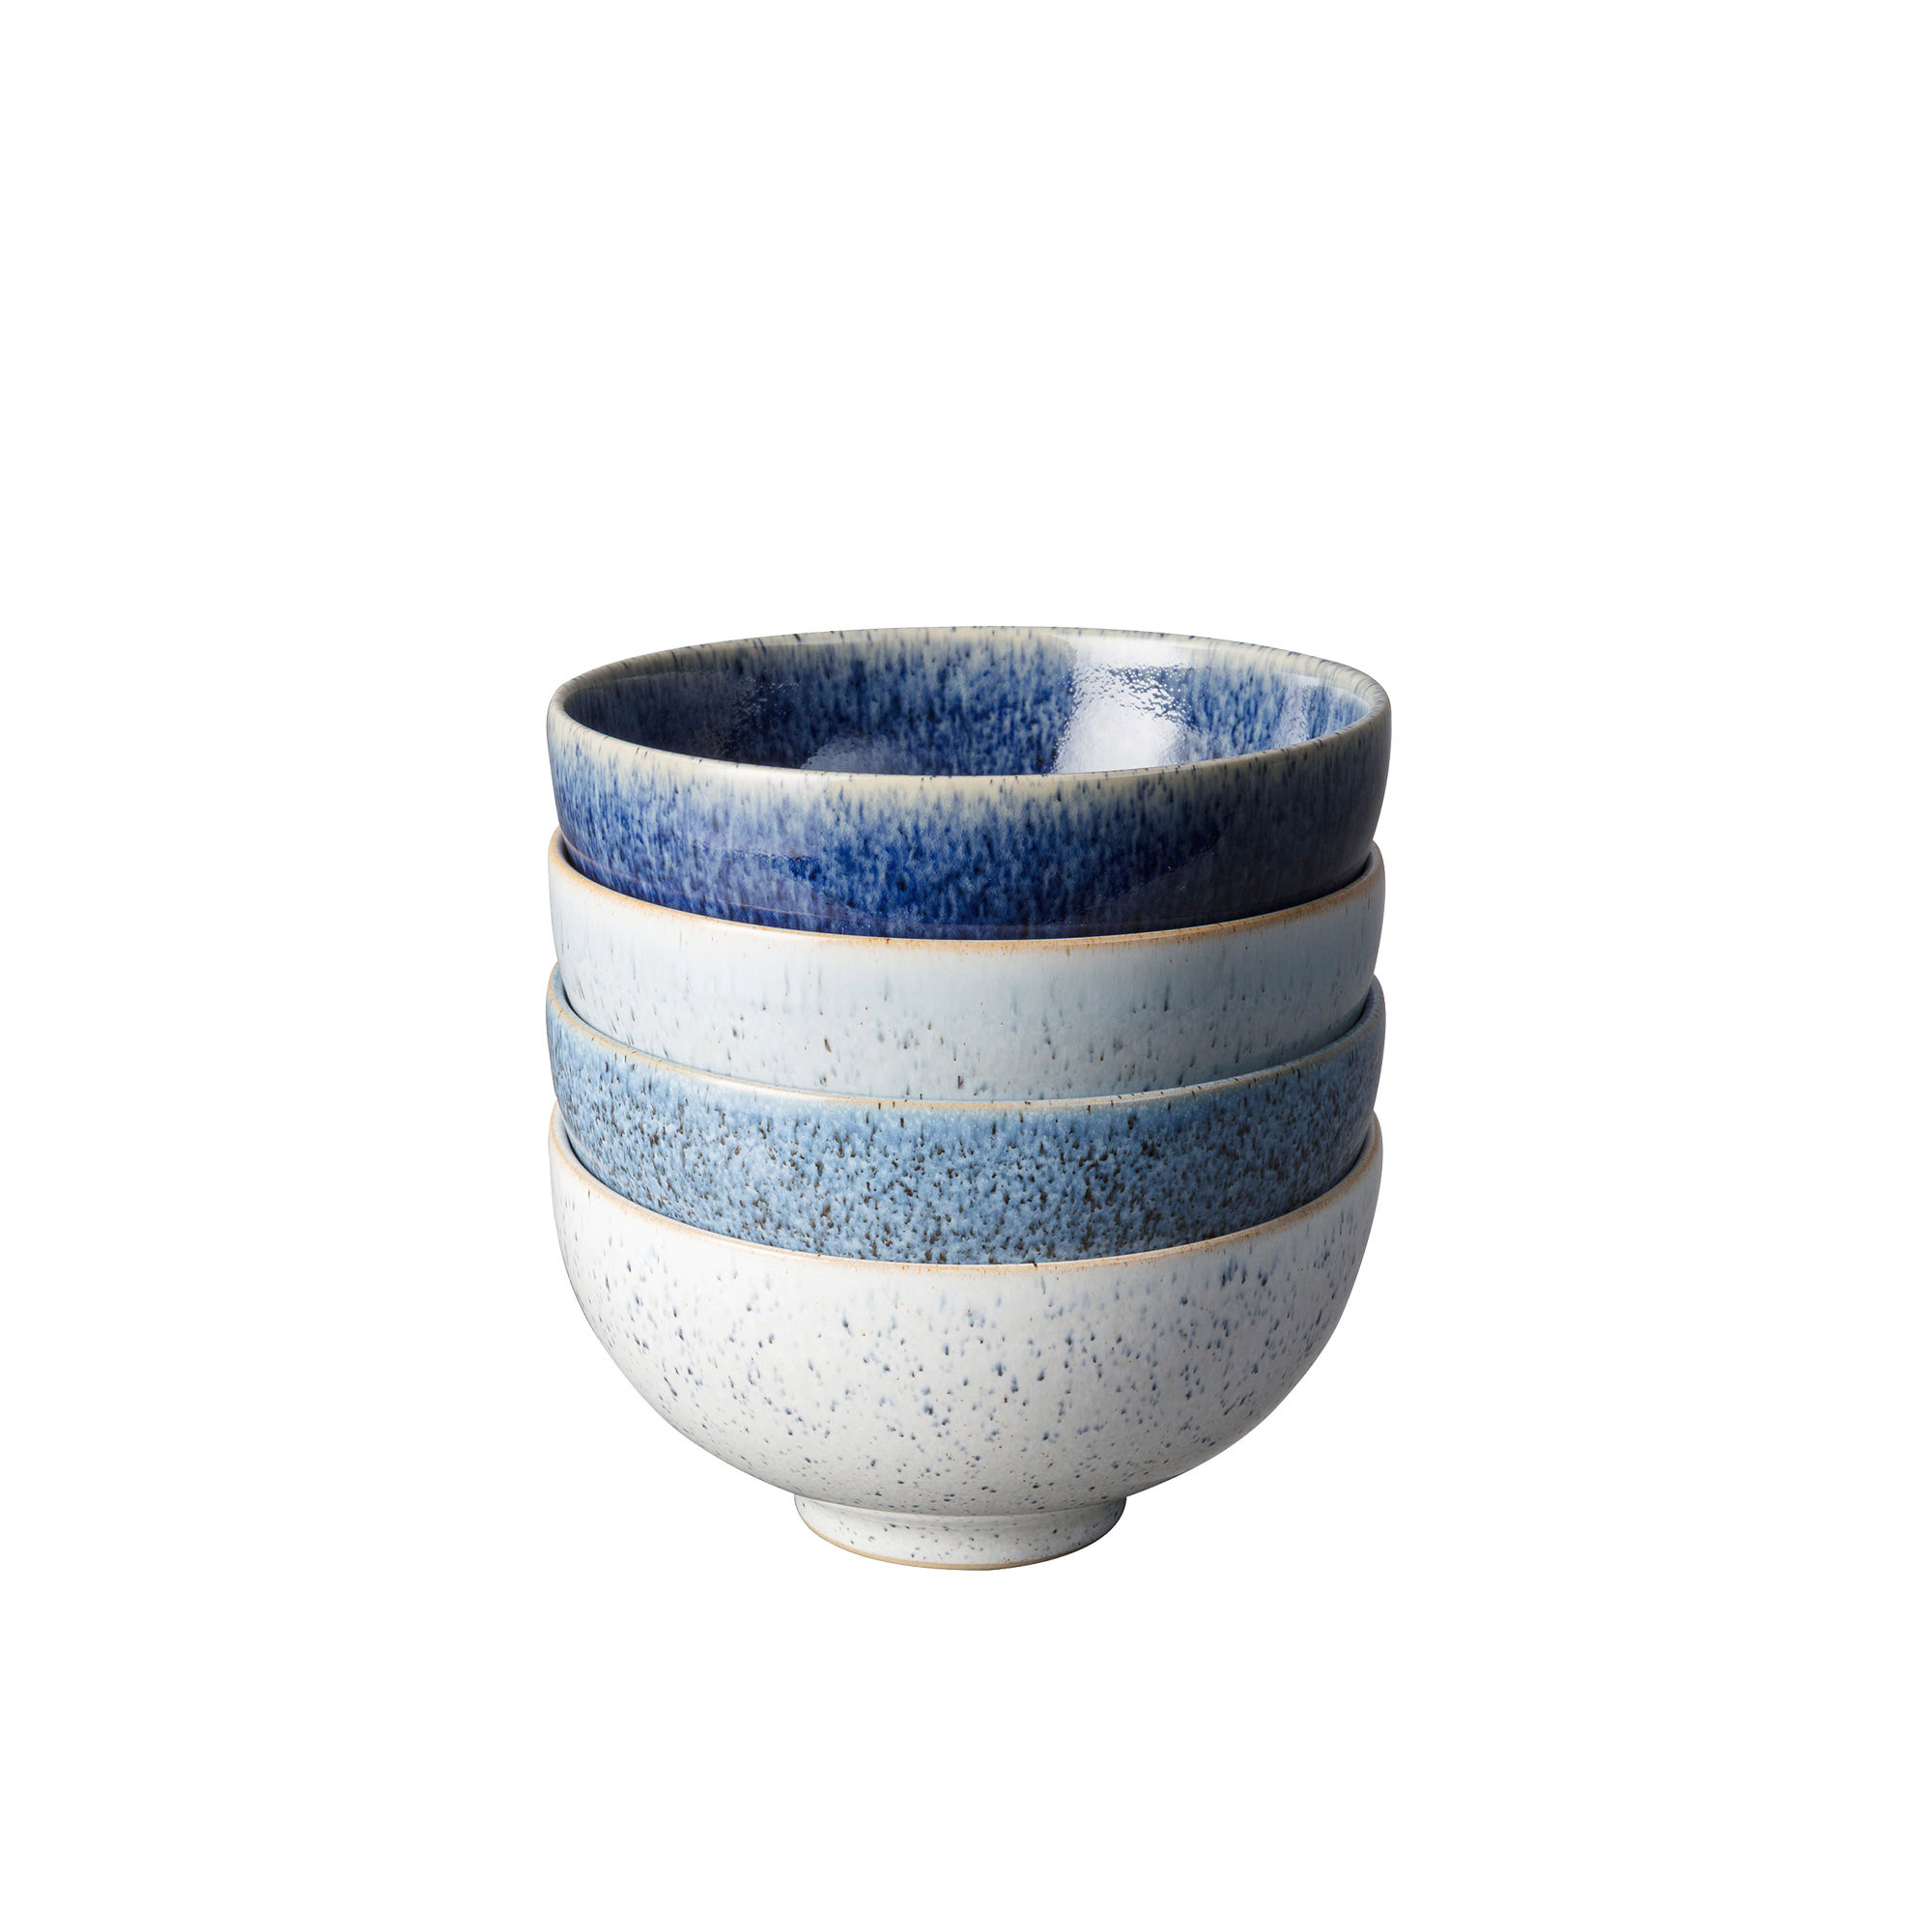 Denby Studio Blue Rice Bowl Set of 4 Image 1